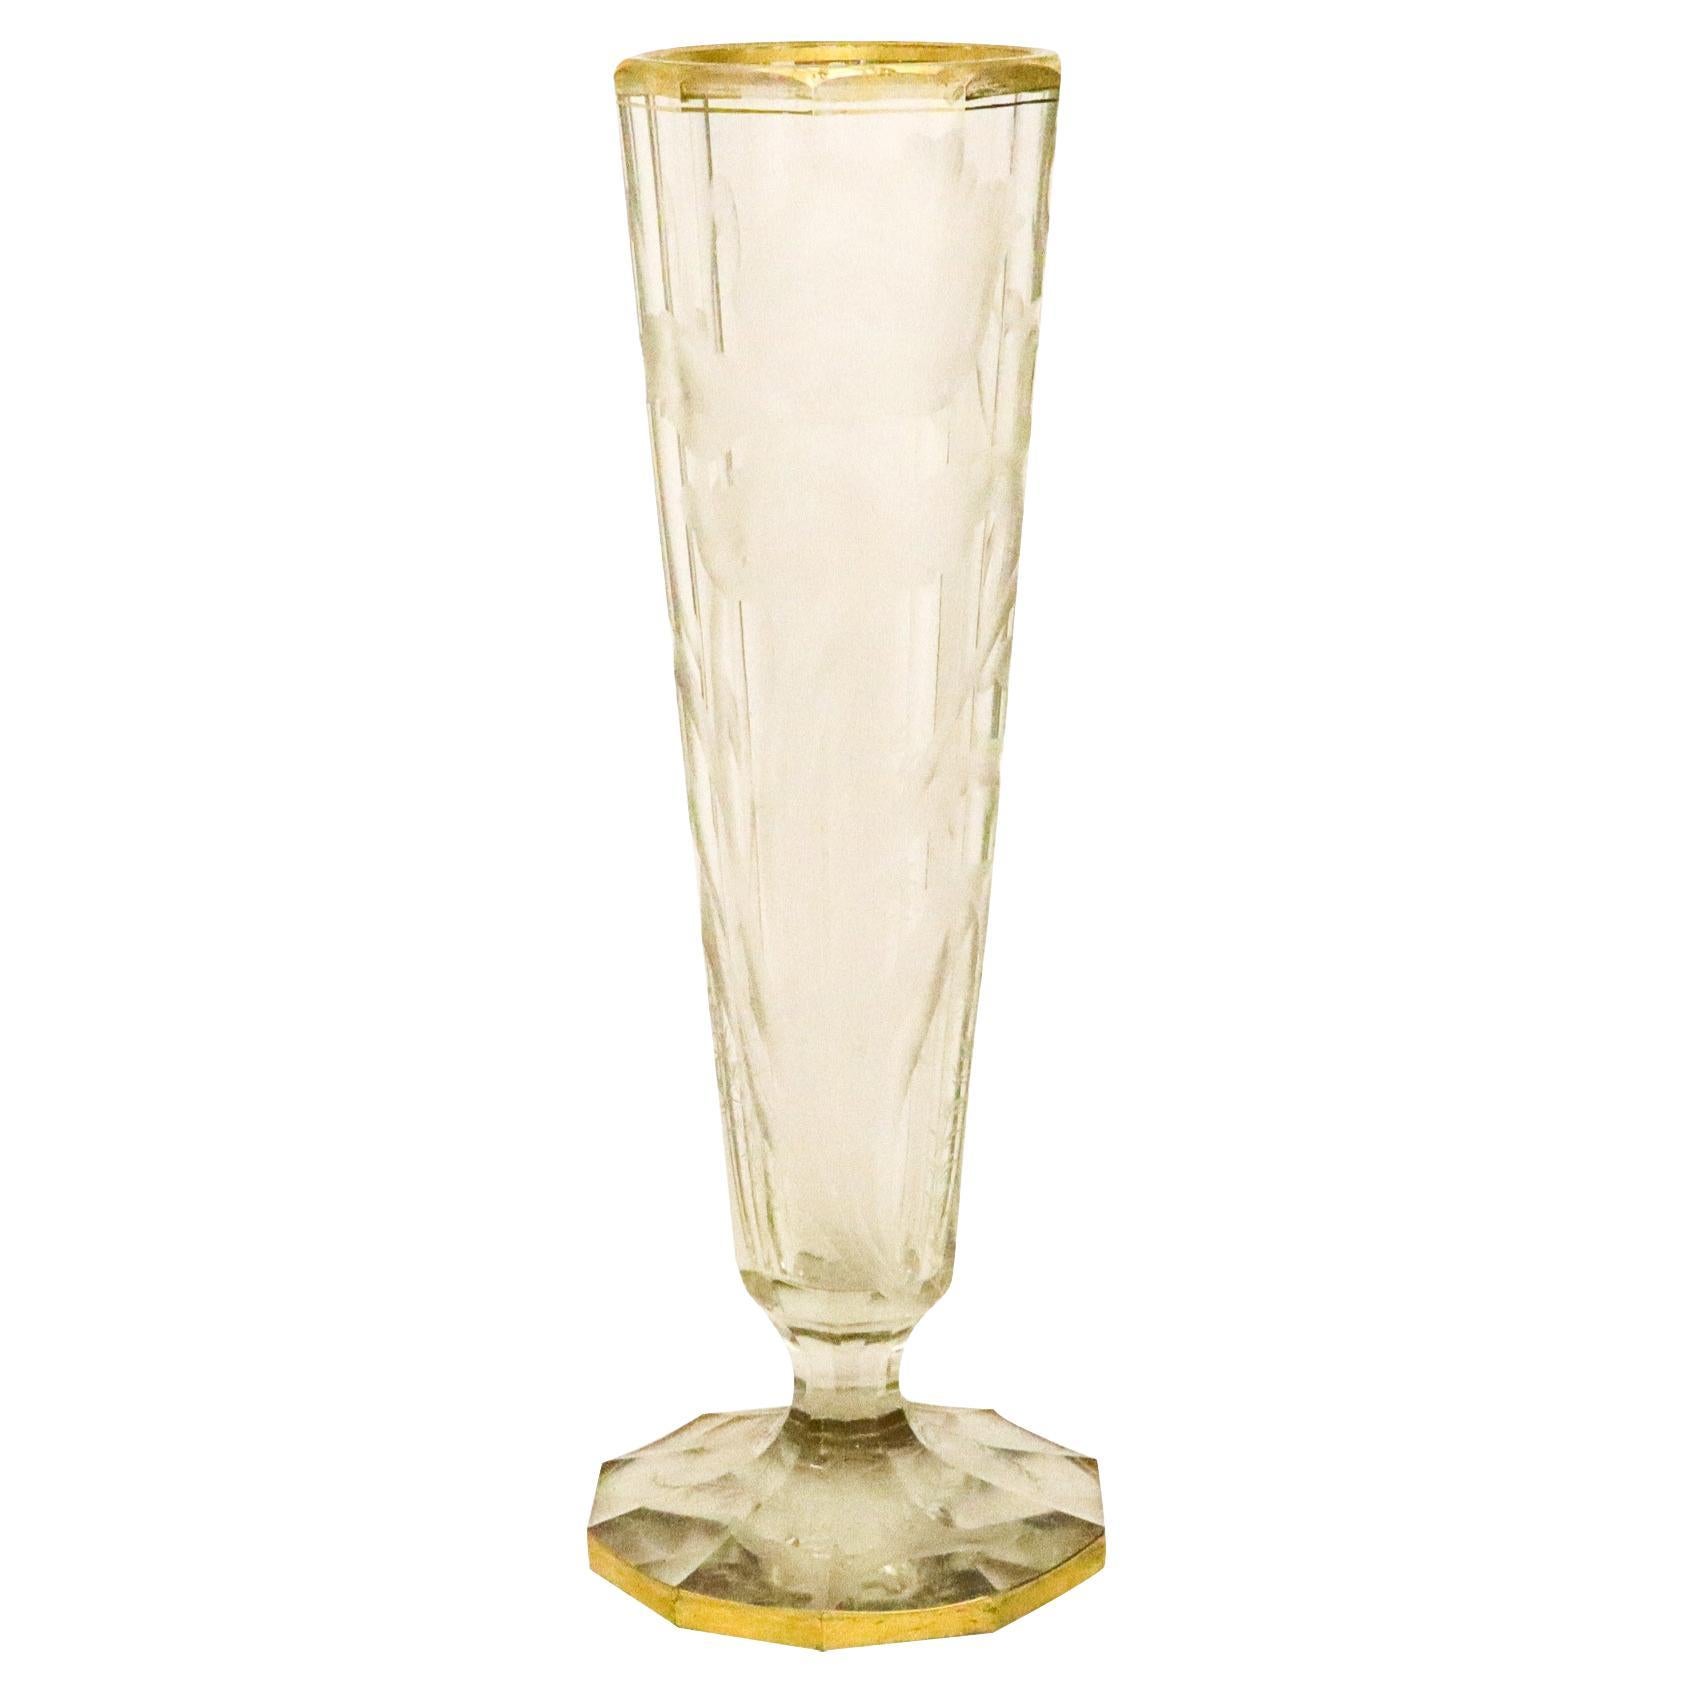 Grand vase en verre gravé Art nouveau tchèque Moser 1900 avec dorure 24 carats